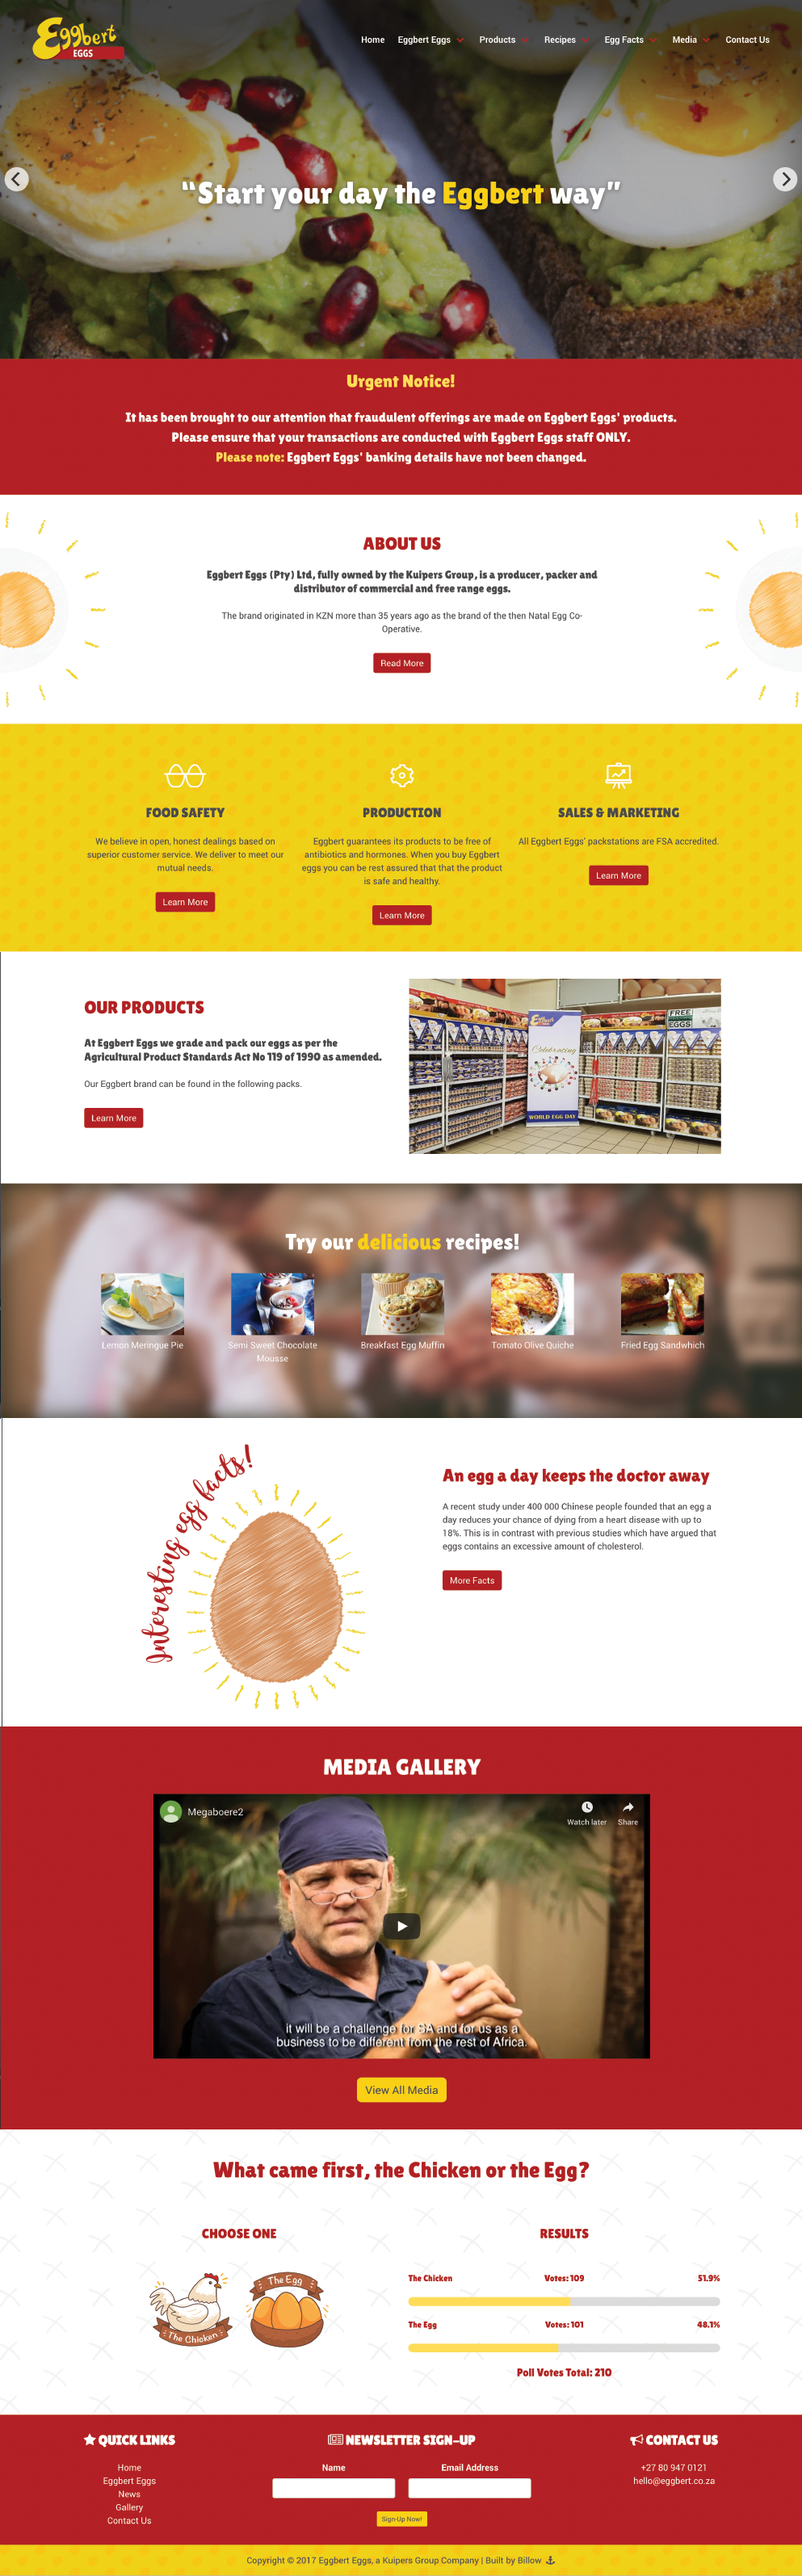 Eggbert Eggs website by Billow